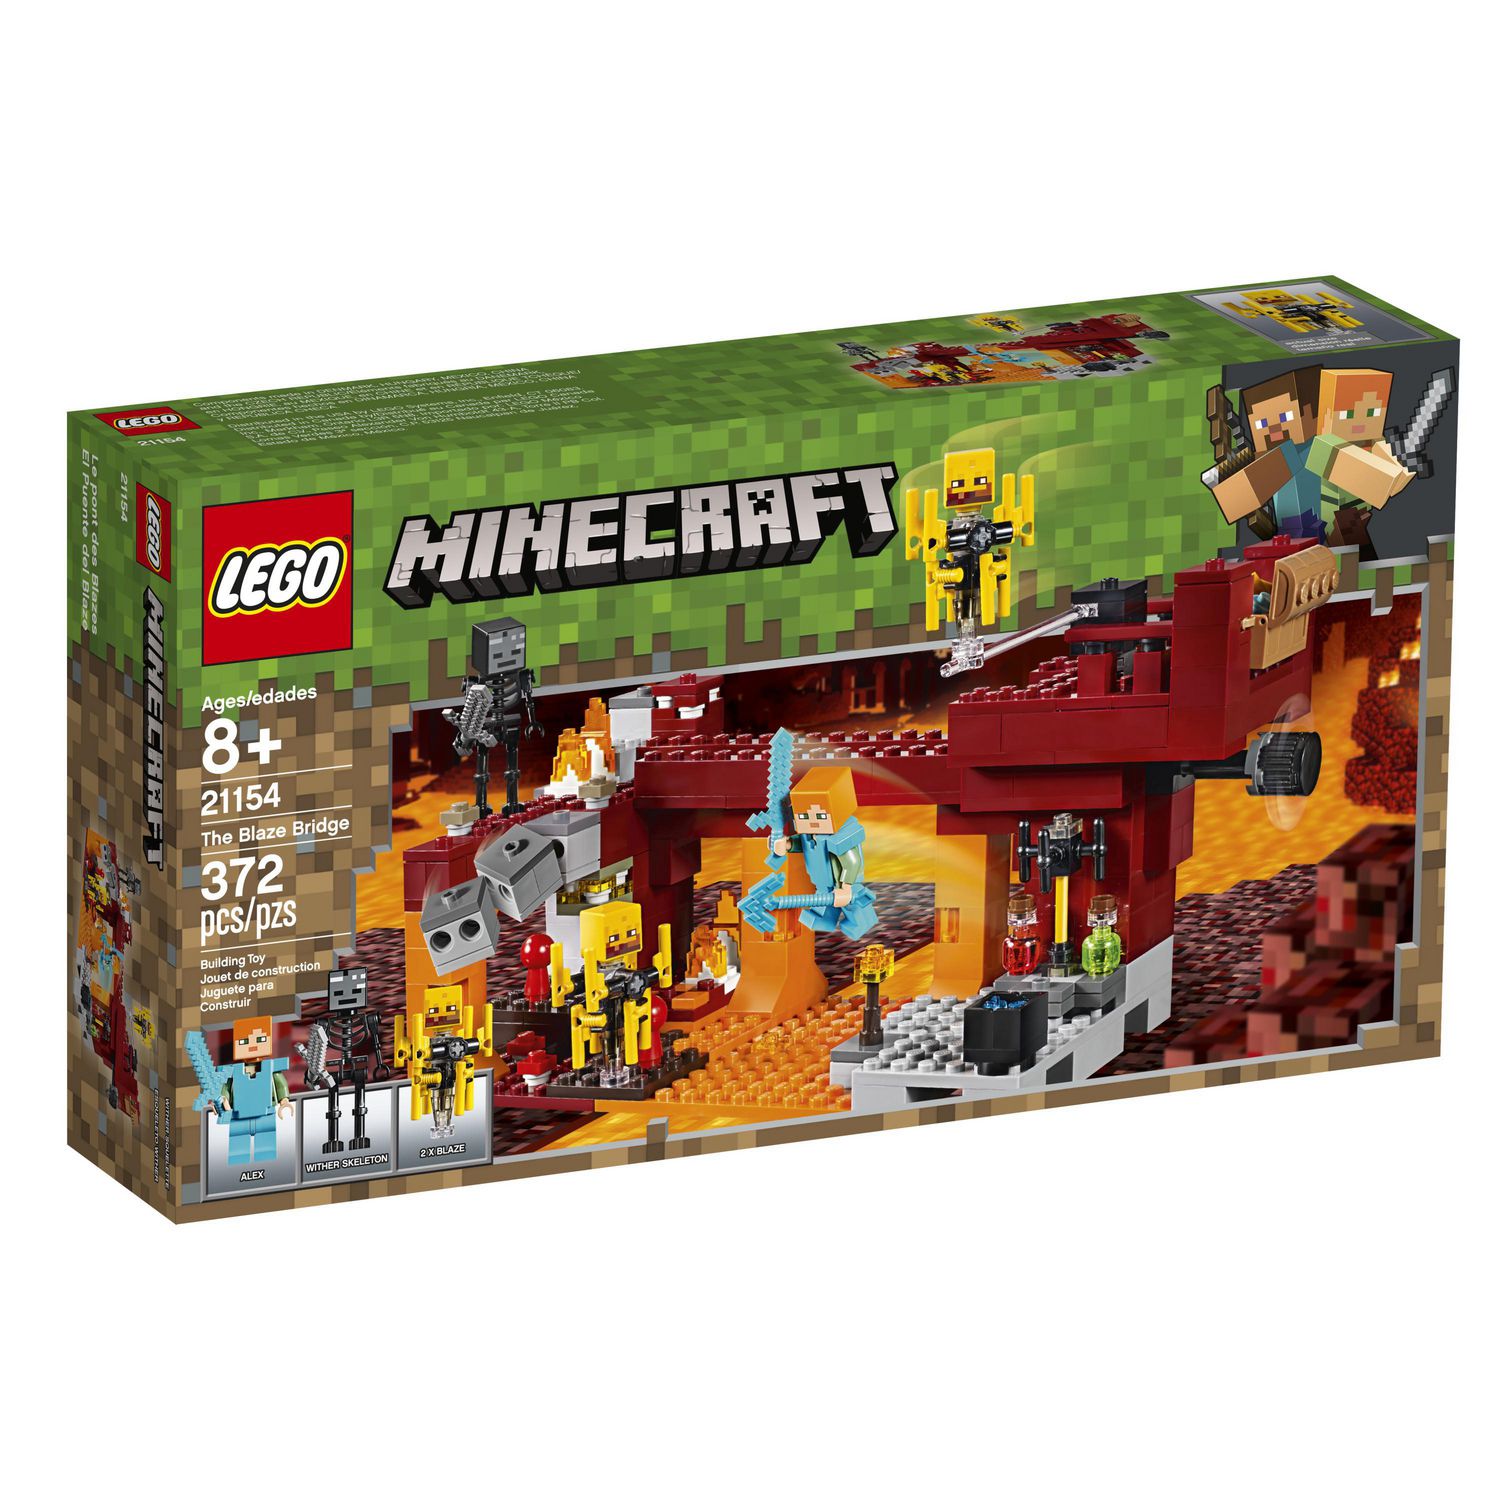 LEGO Minecraft The Blaze Bridge 21154 Toy Building Kit (372 Piece